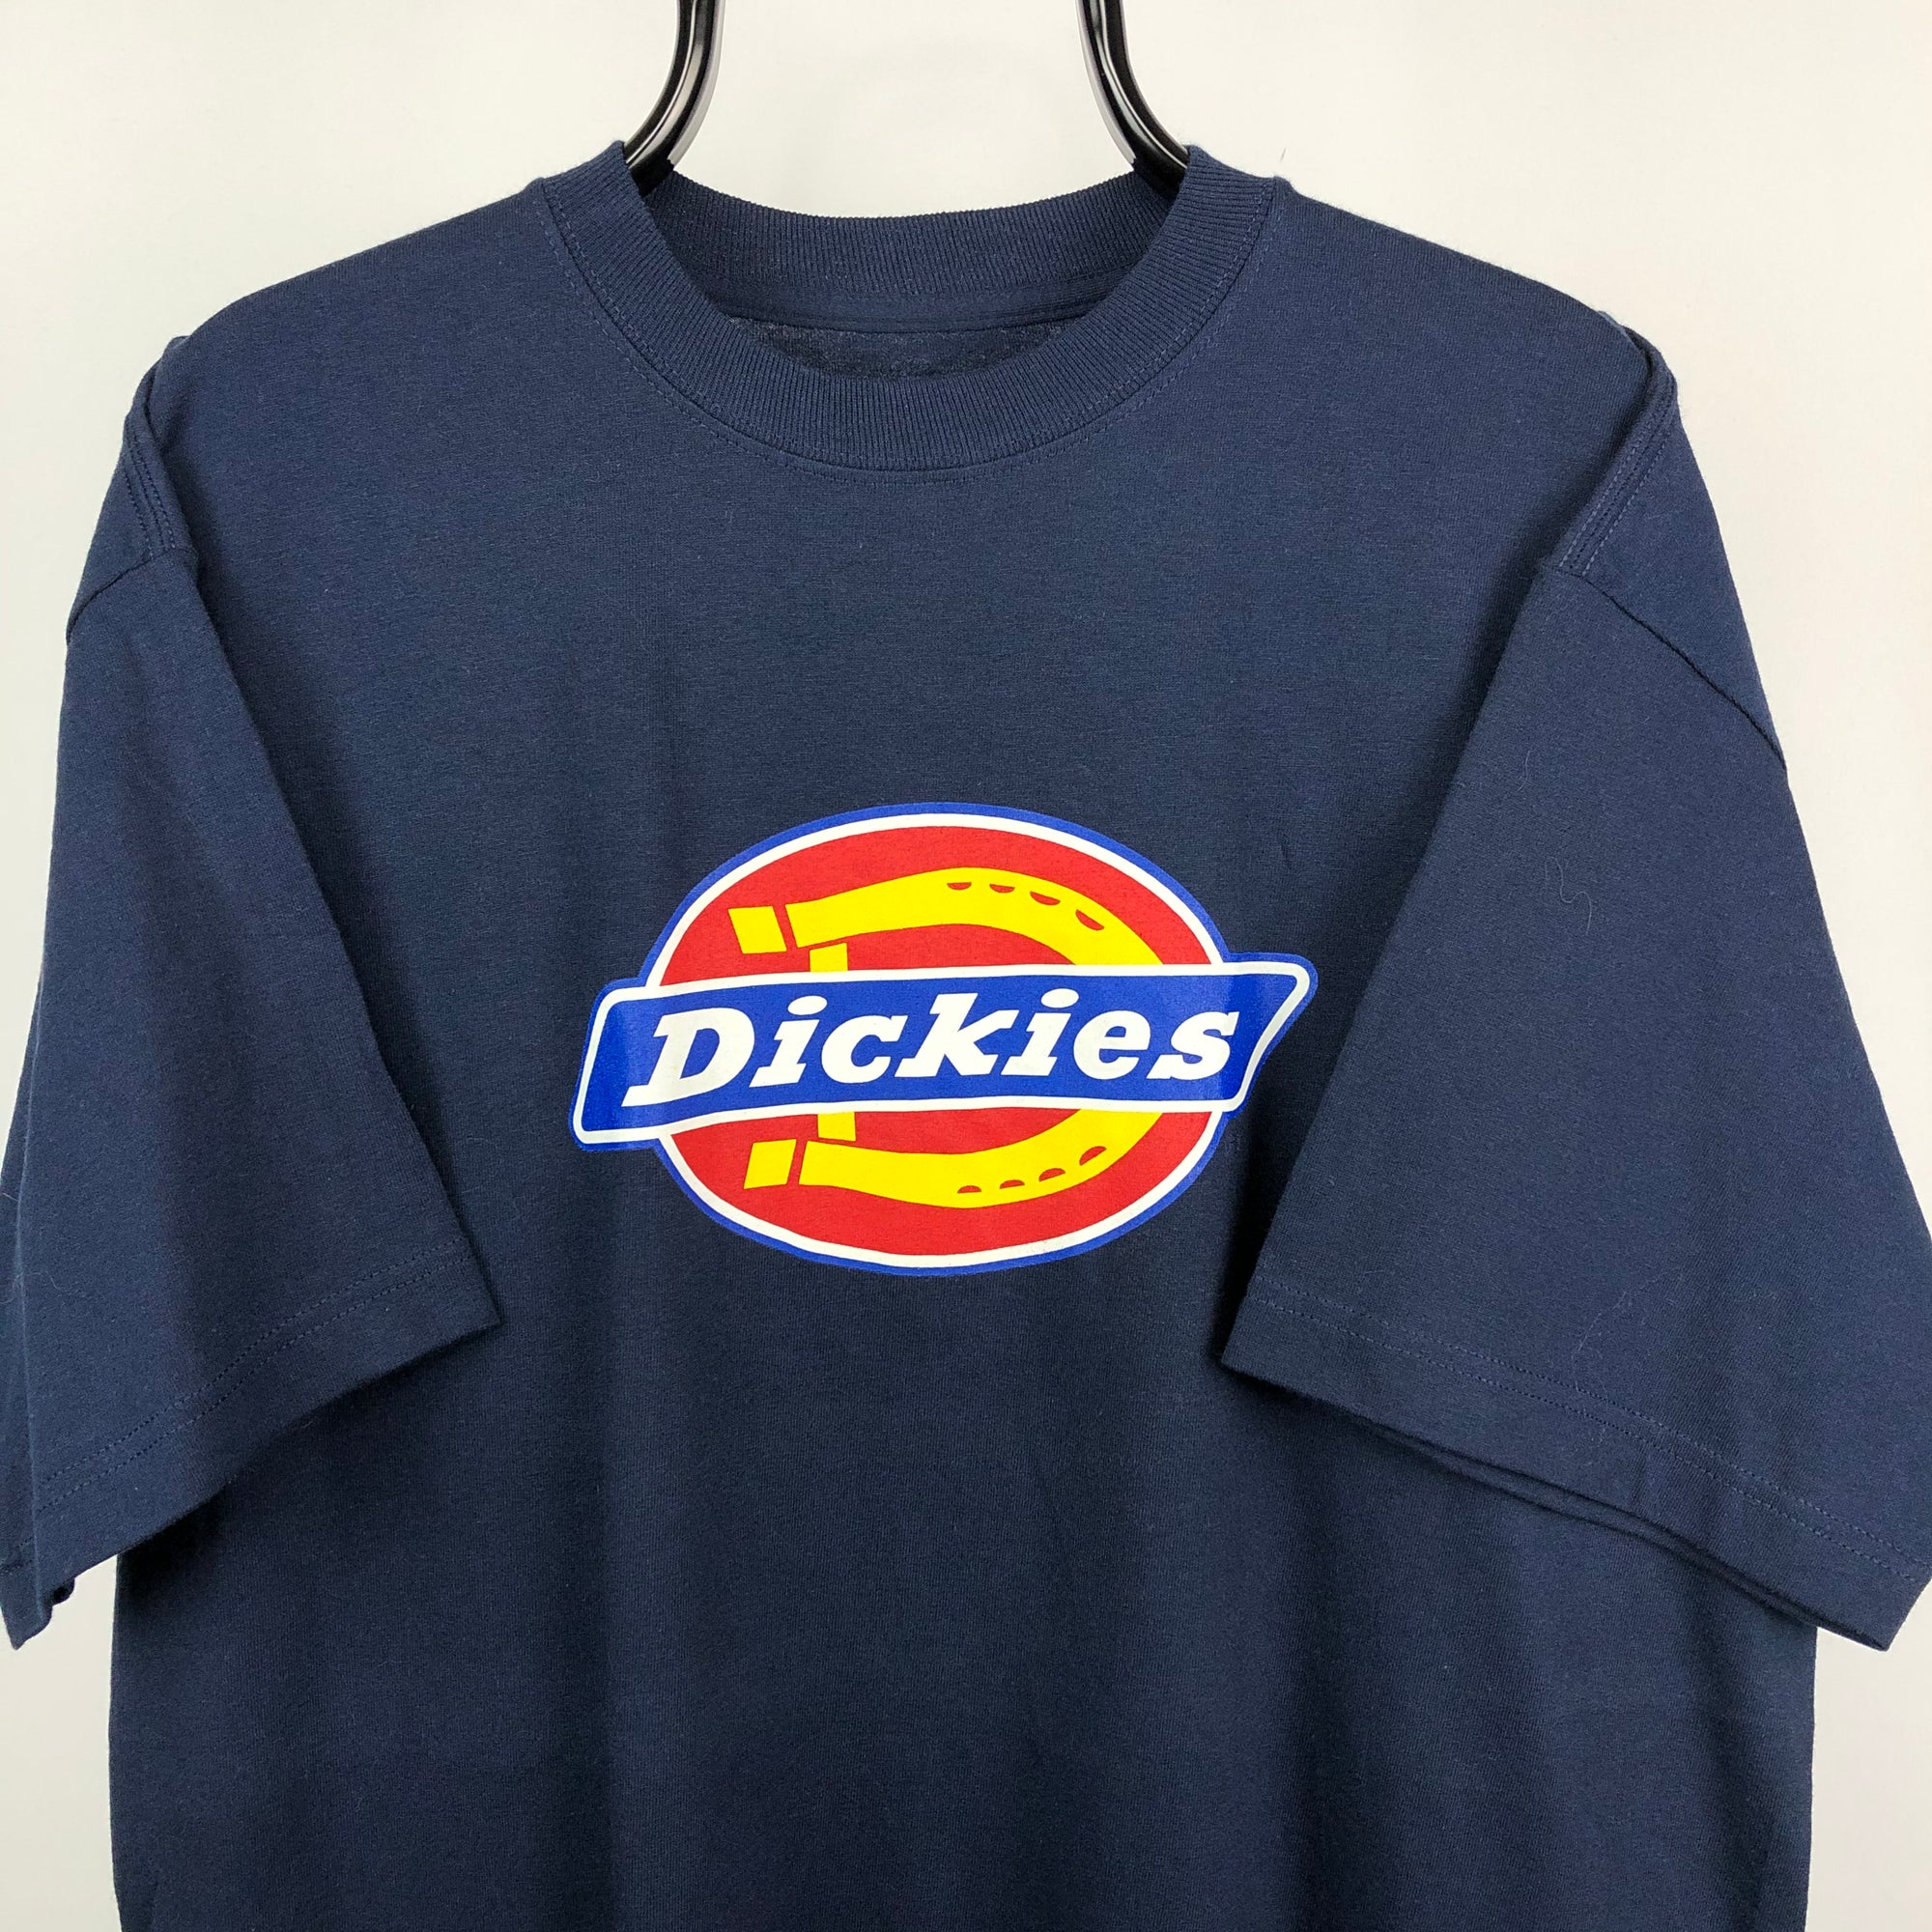 Dickies Big Logo Tee in Navy - Men's XL/Women's XXL